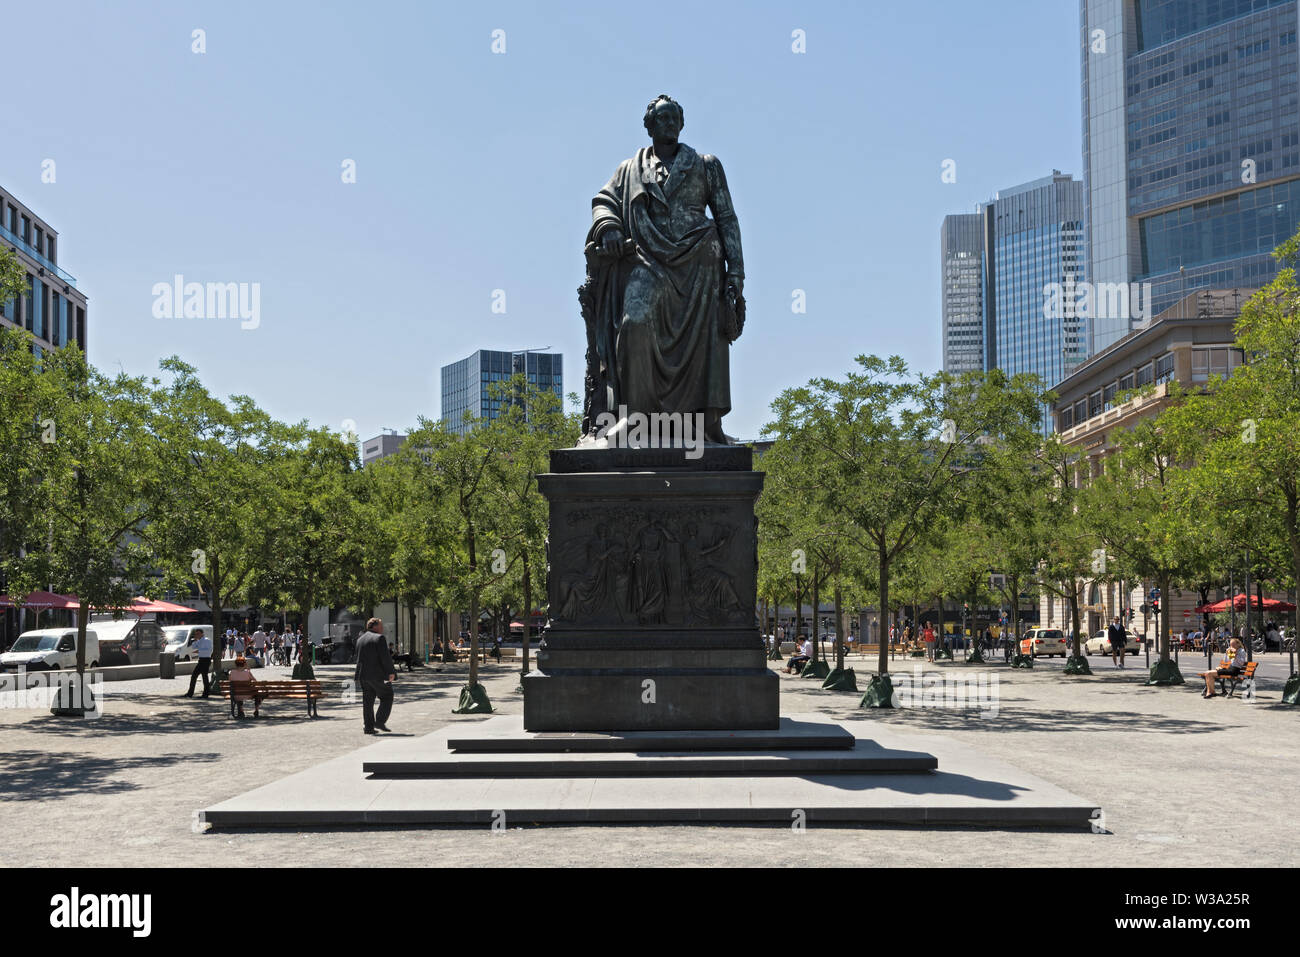 Statue en bronze de Johann Wolfgang von Goethe à Frankfurt am Main Allemagne Banque D'Images